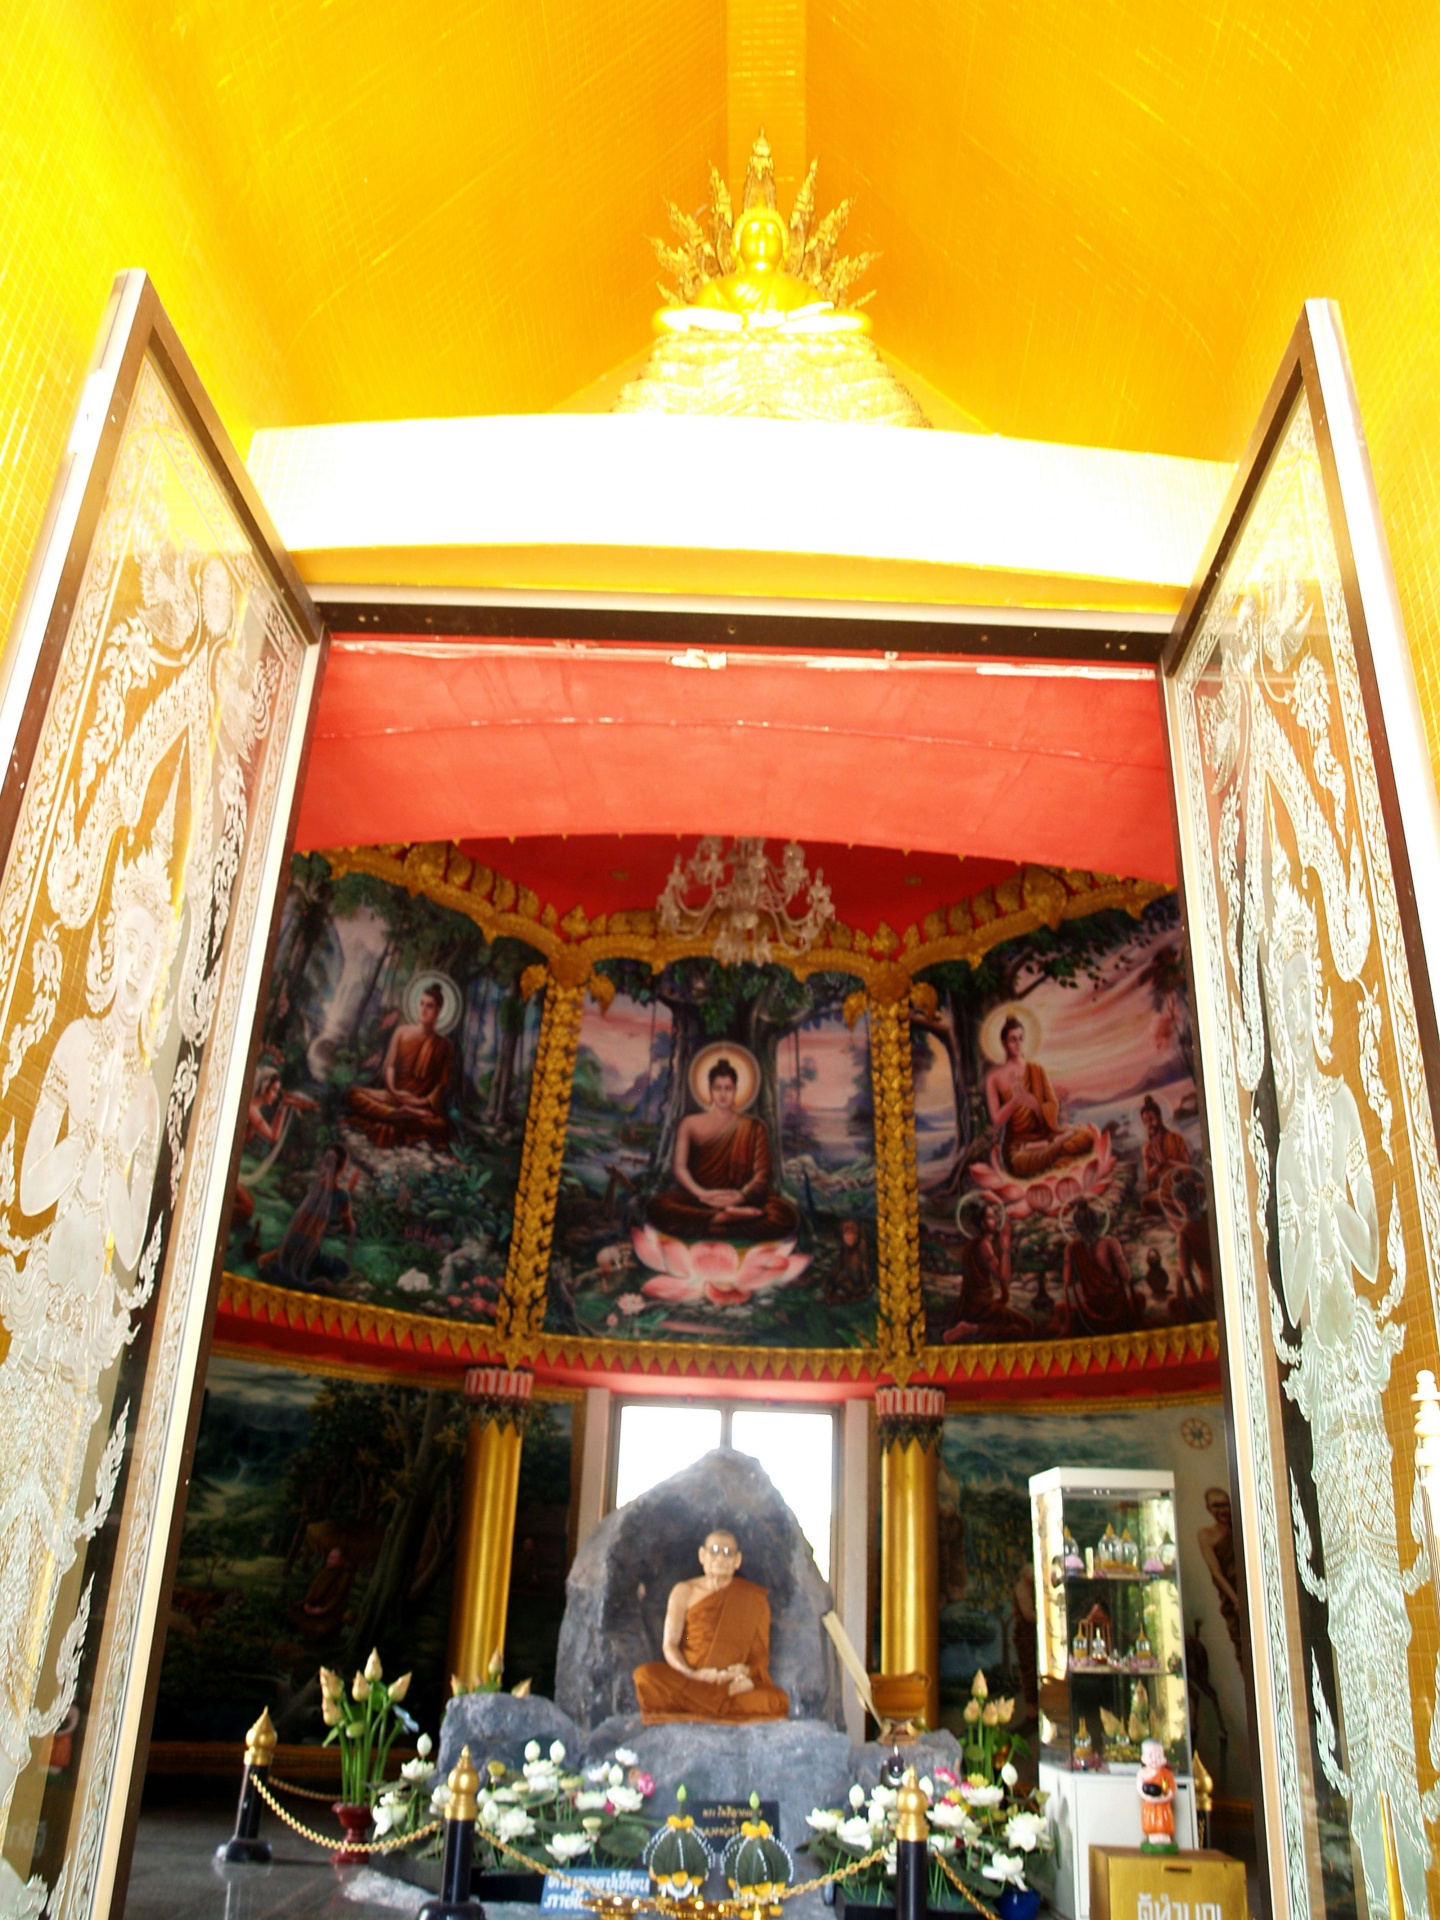 Templo de wat tam sang phet, Amphoe Muea